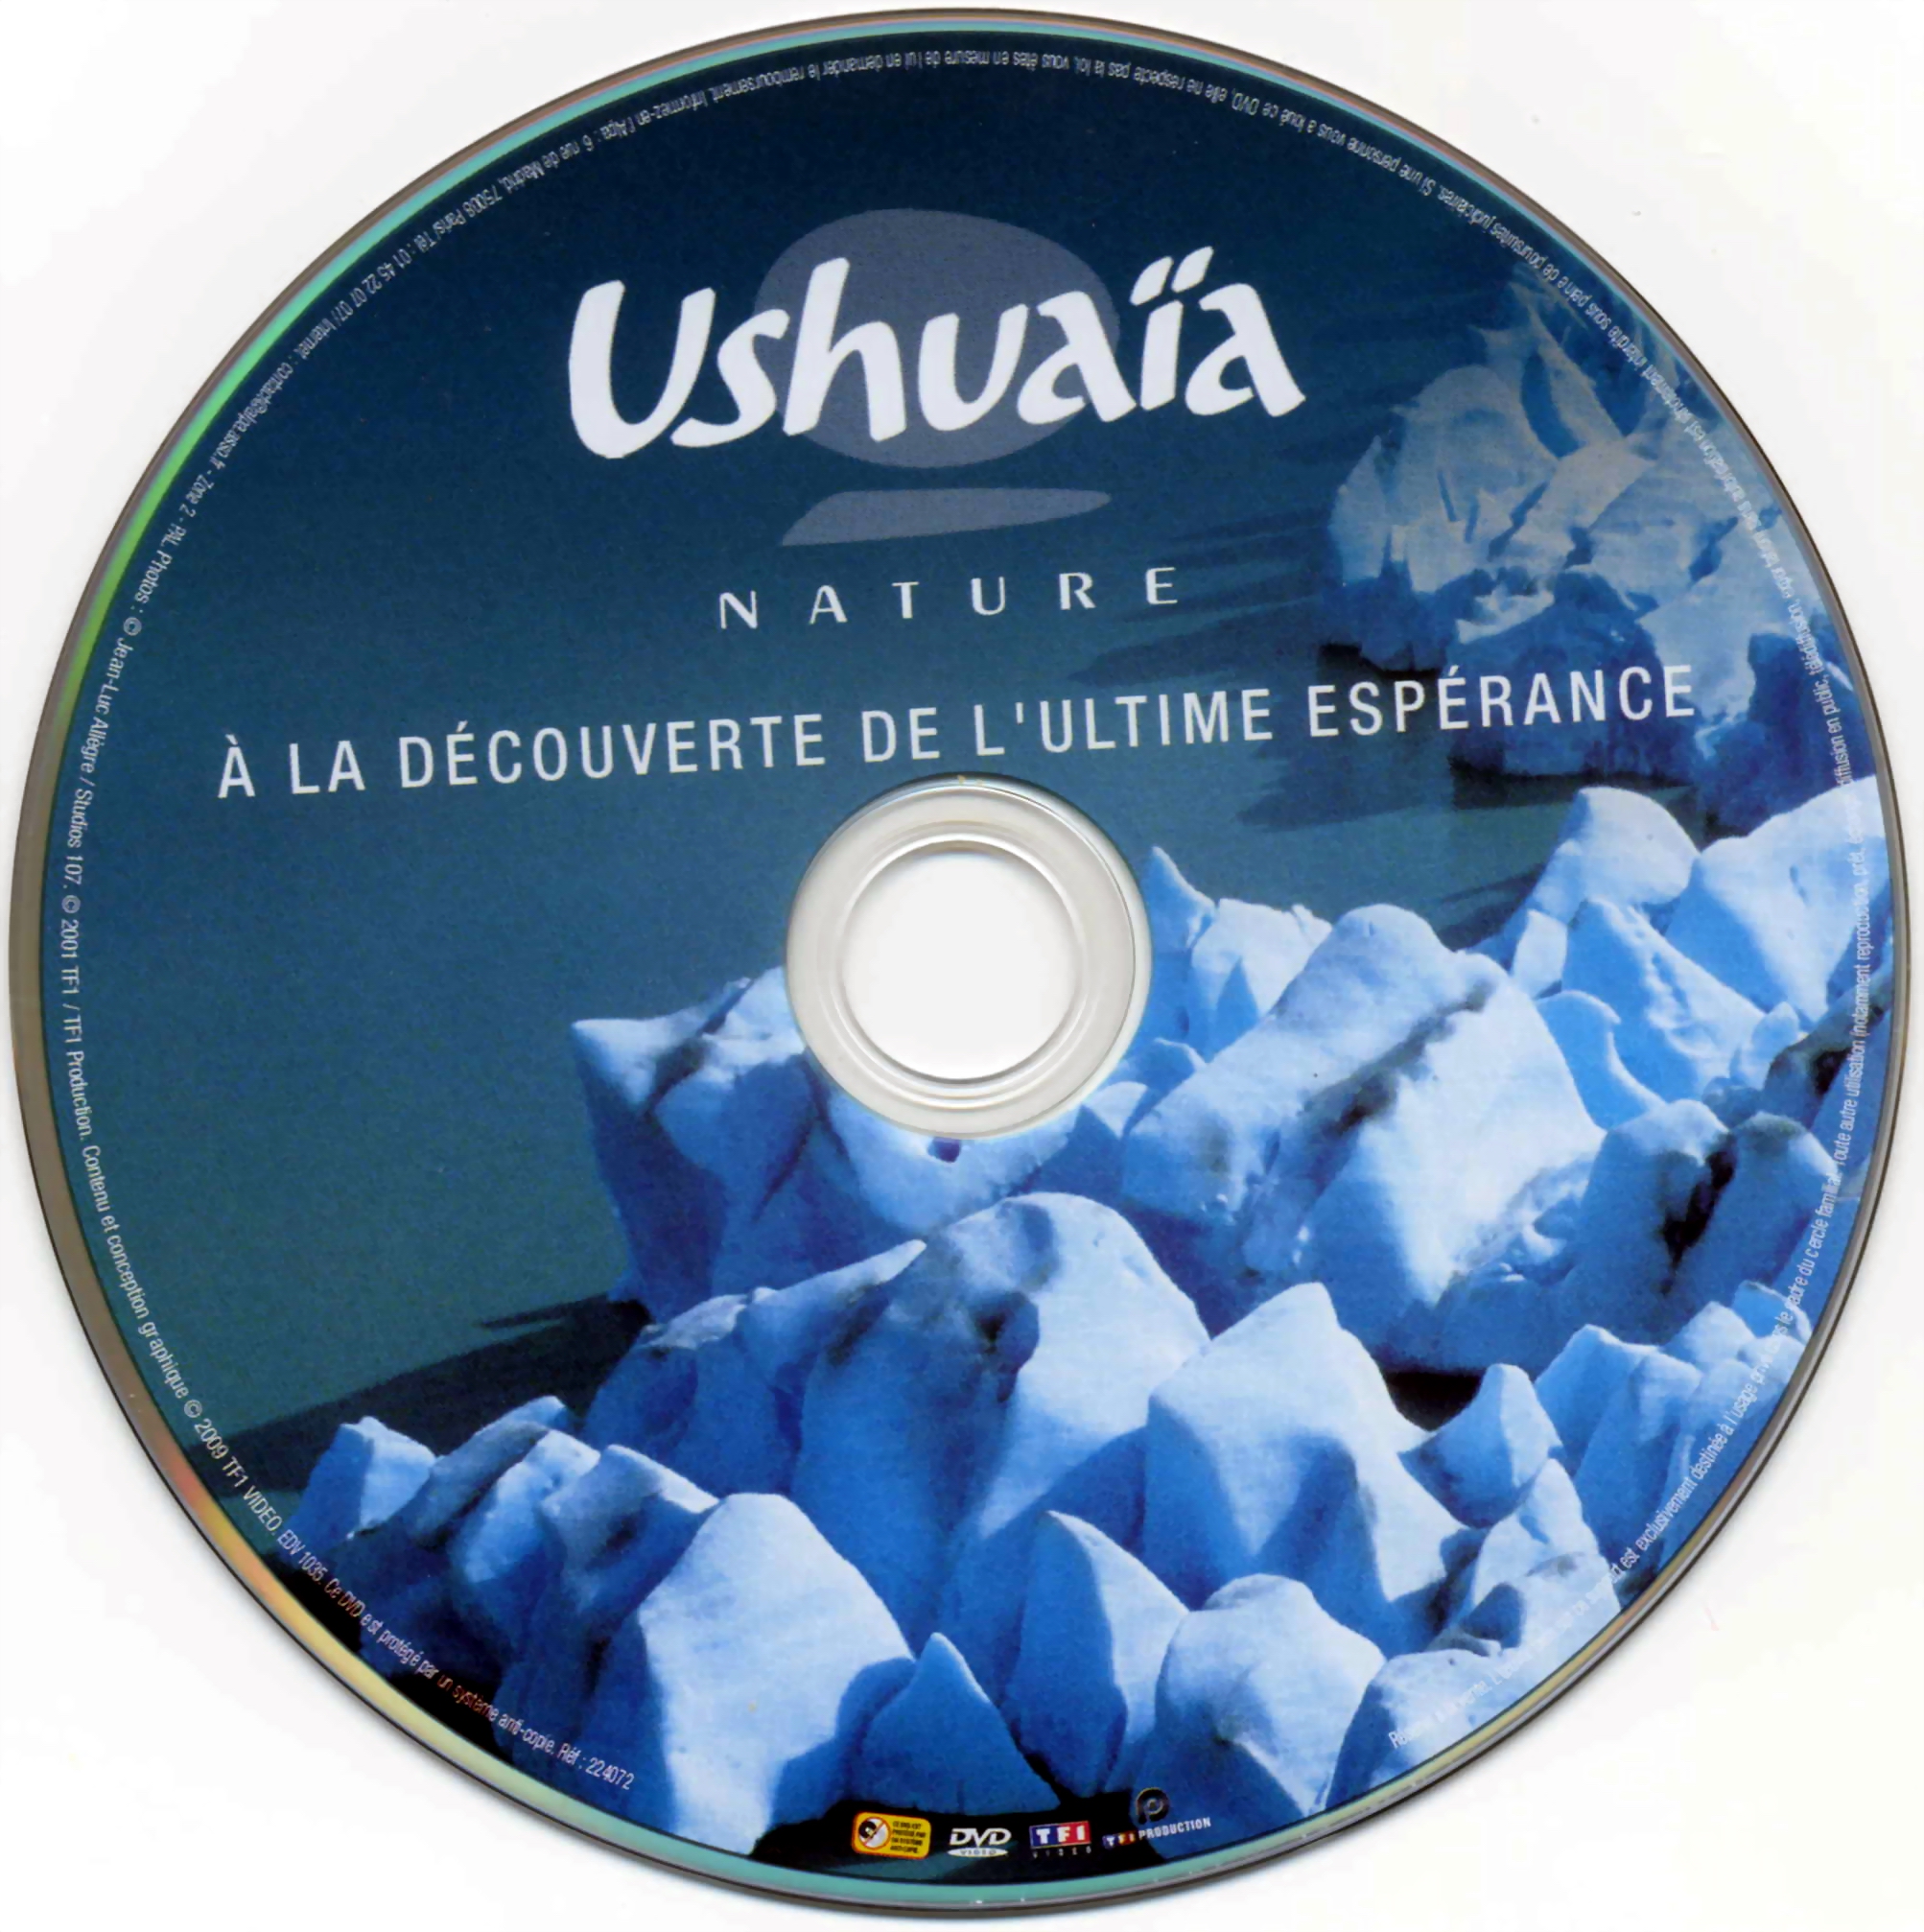 Ushuaia Nature - A la dcouverte de l